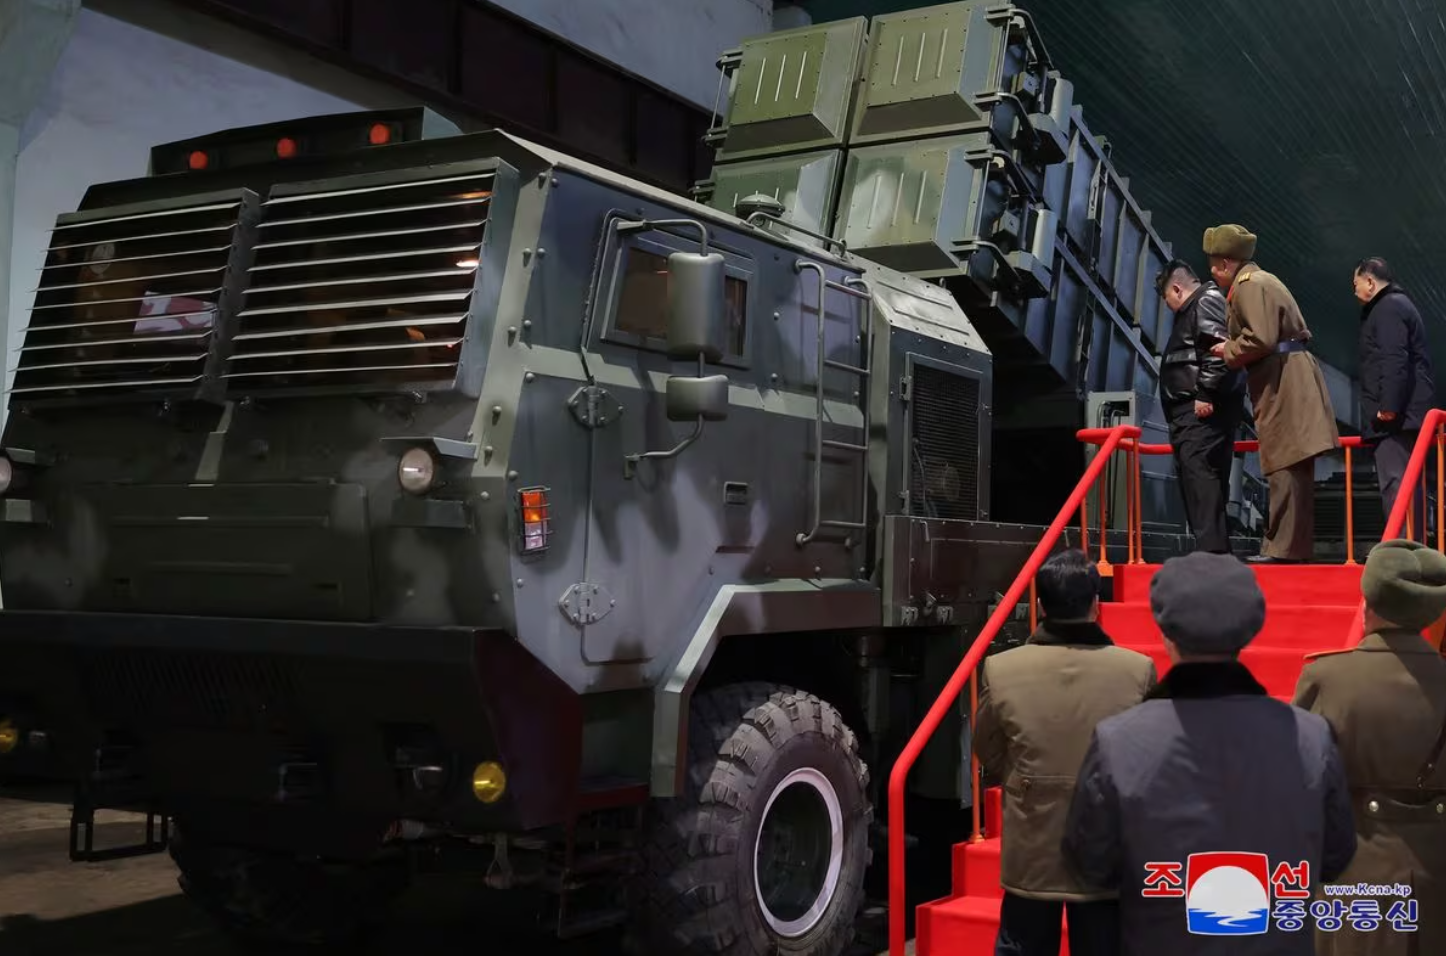 Hé lộ hình ảnh bên trong nhà máy vũ khí của Triều Tiên- Ảnh 2.